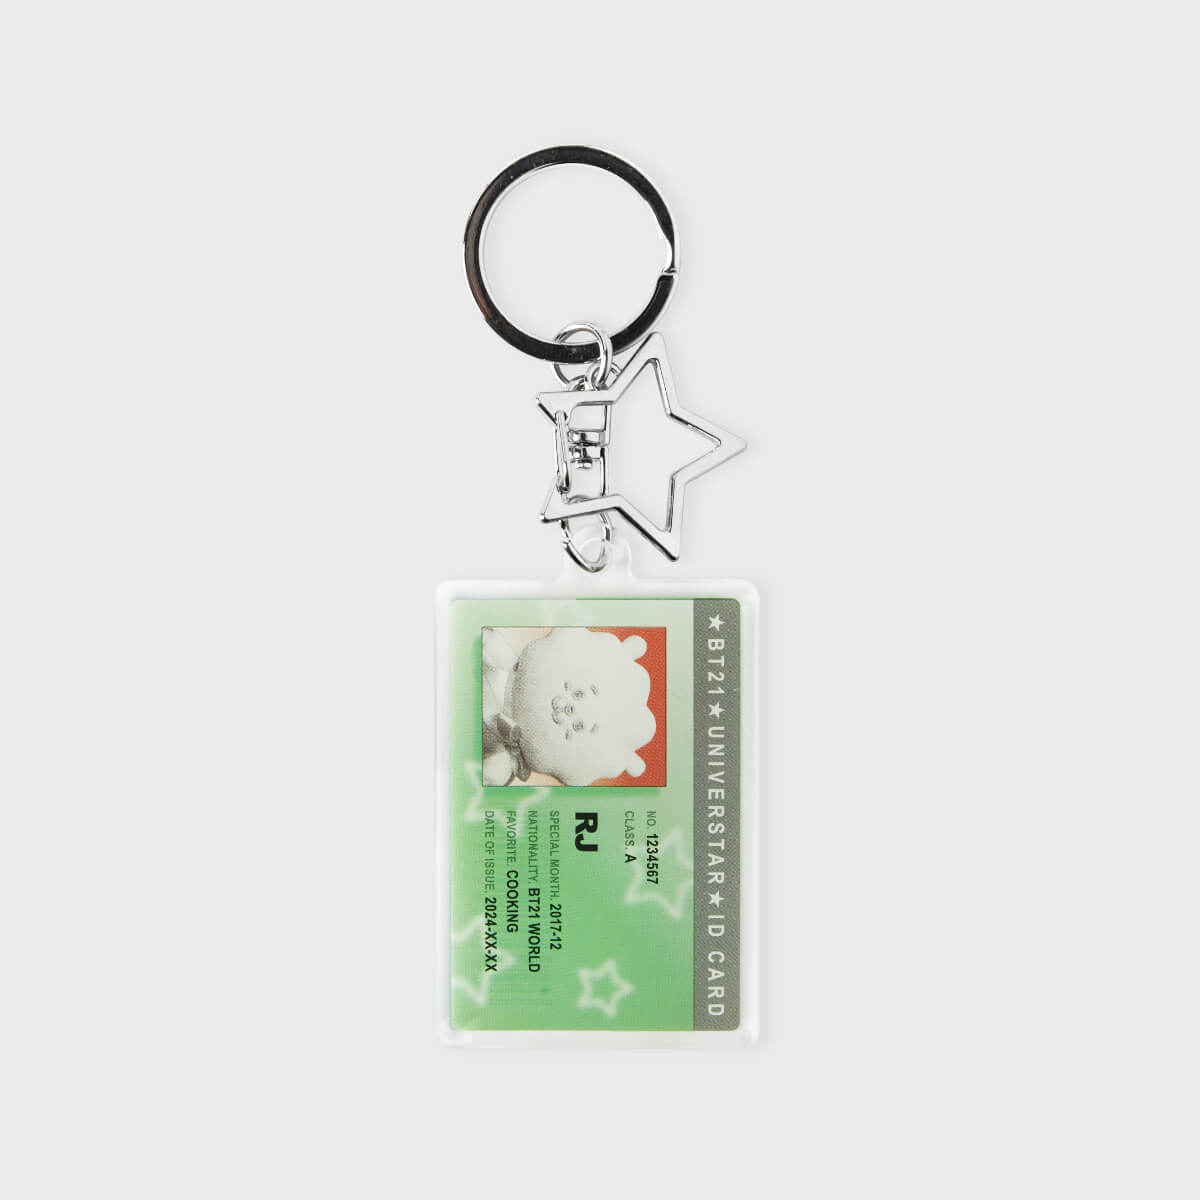 BT21 RJ Silver Edition Acrylic ID Card Keyring